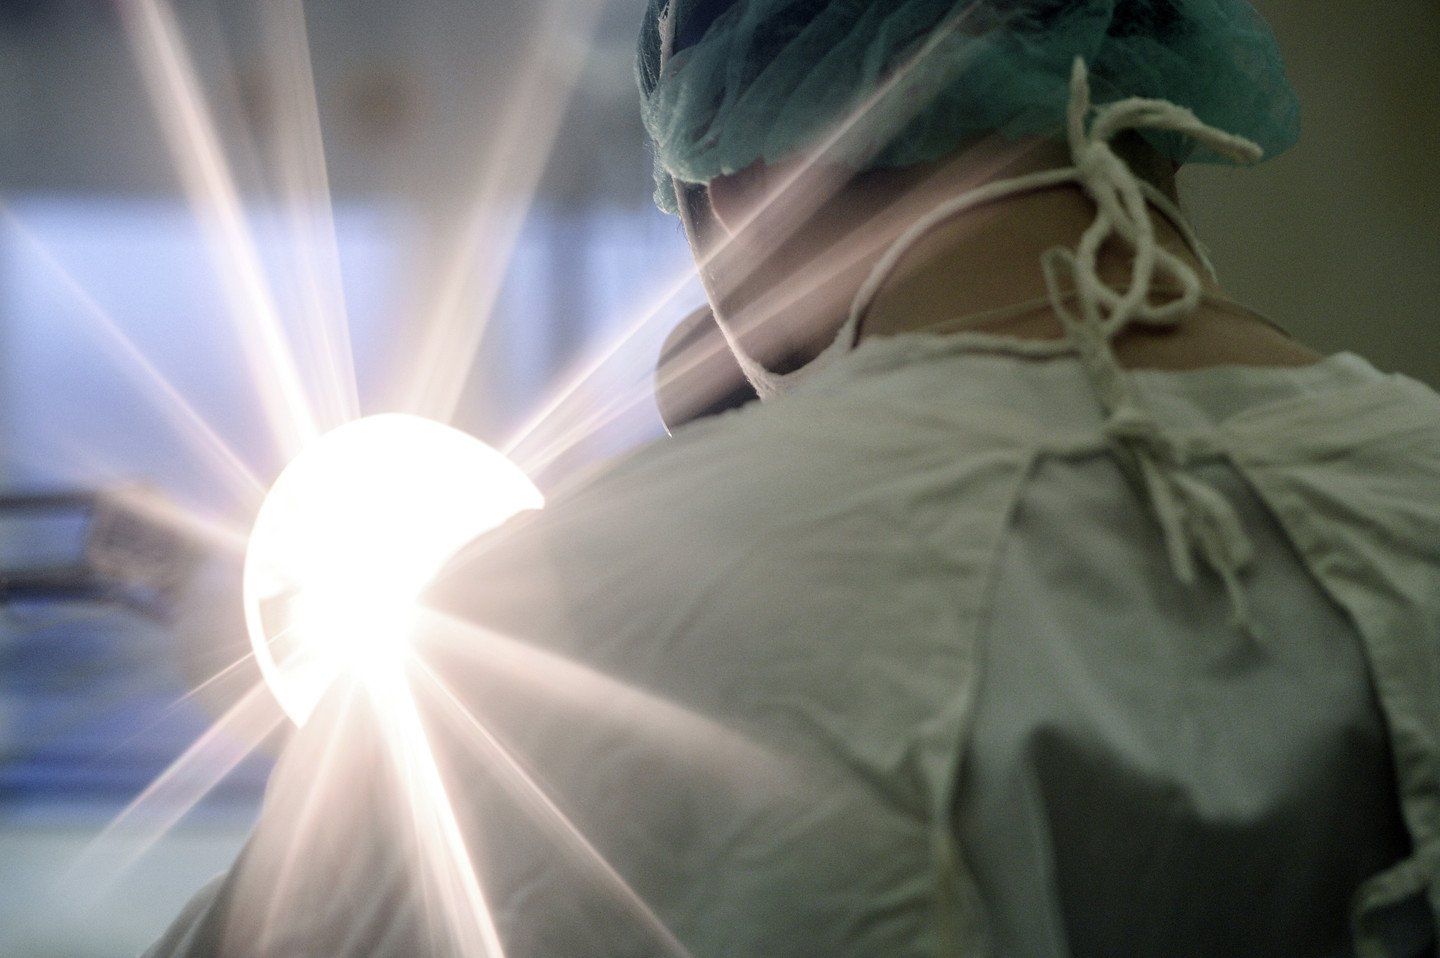 В Индии хирурги извлекли из пациента 7 кг железных предметов